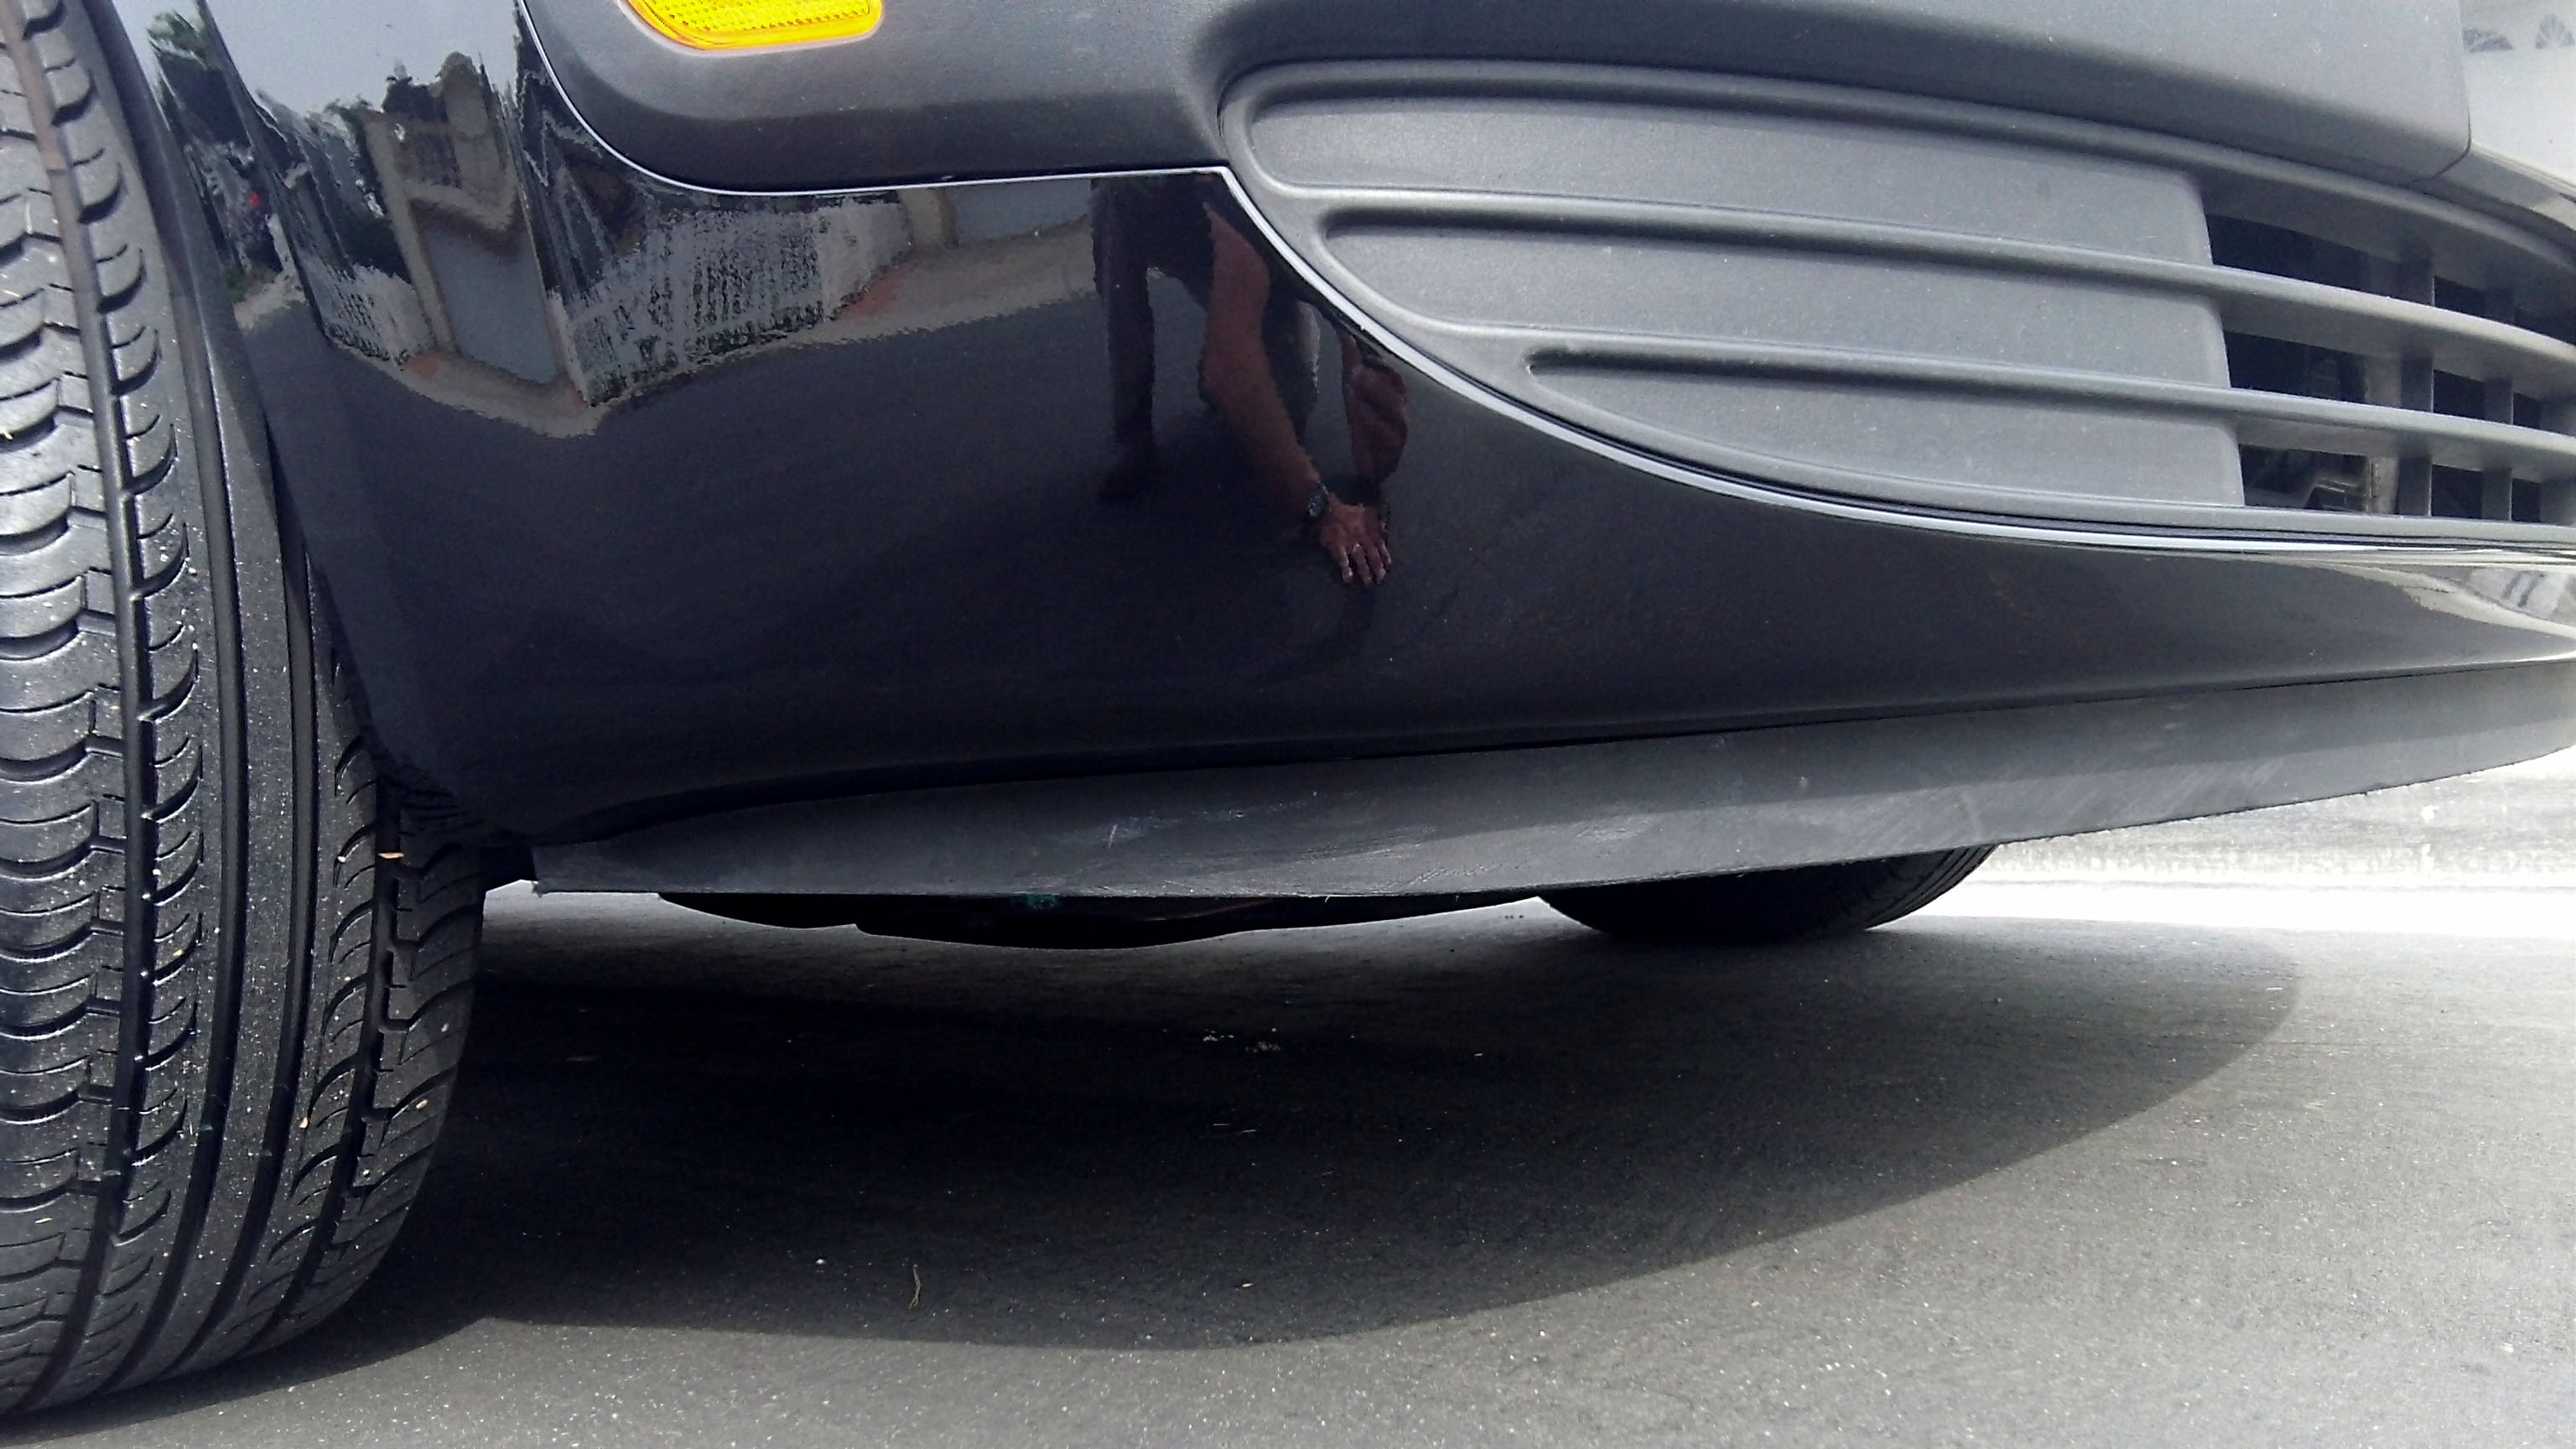 2 March bumper repaired | Mobile bumper & scratch repair at Auto